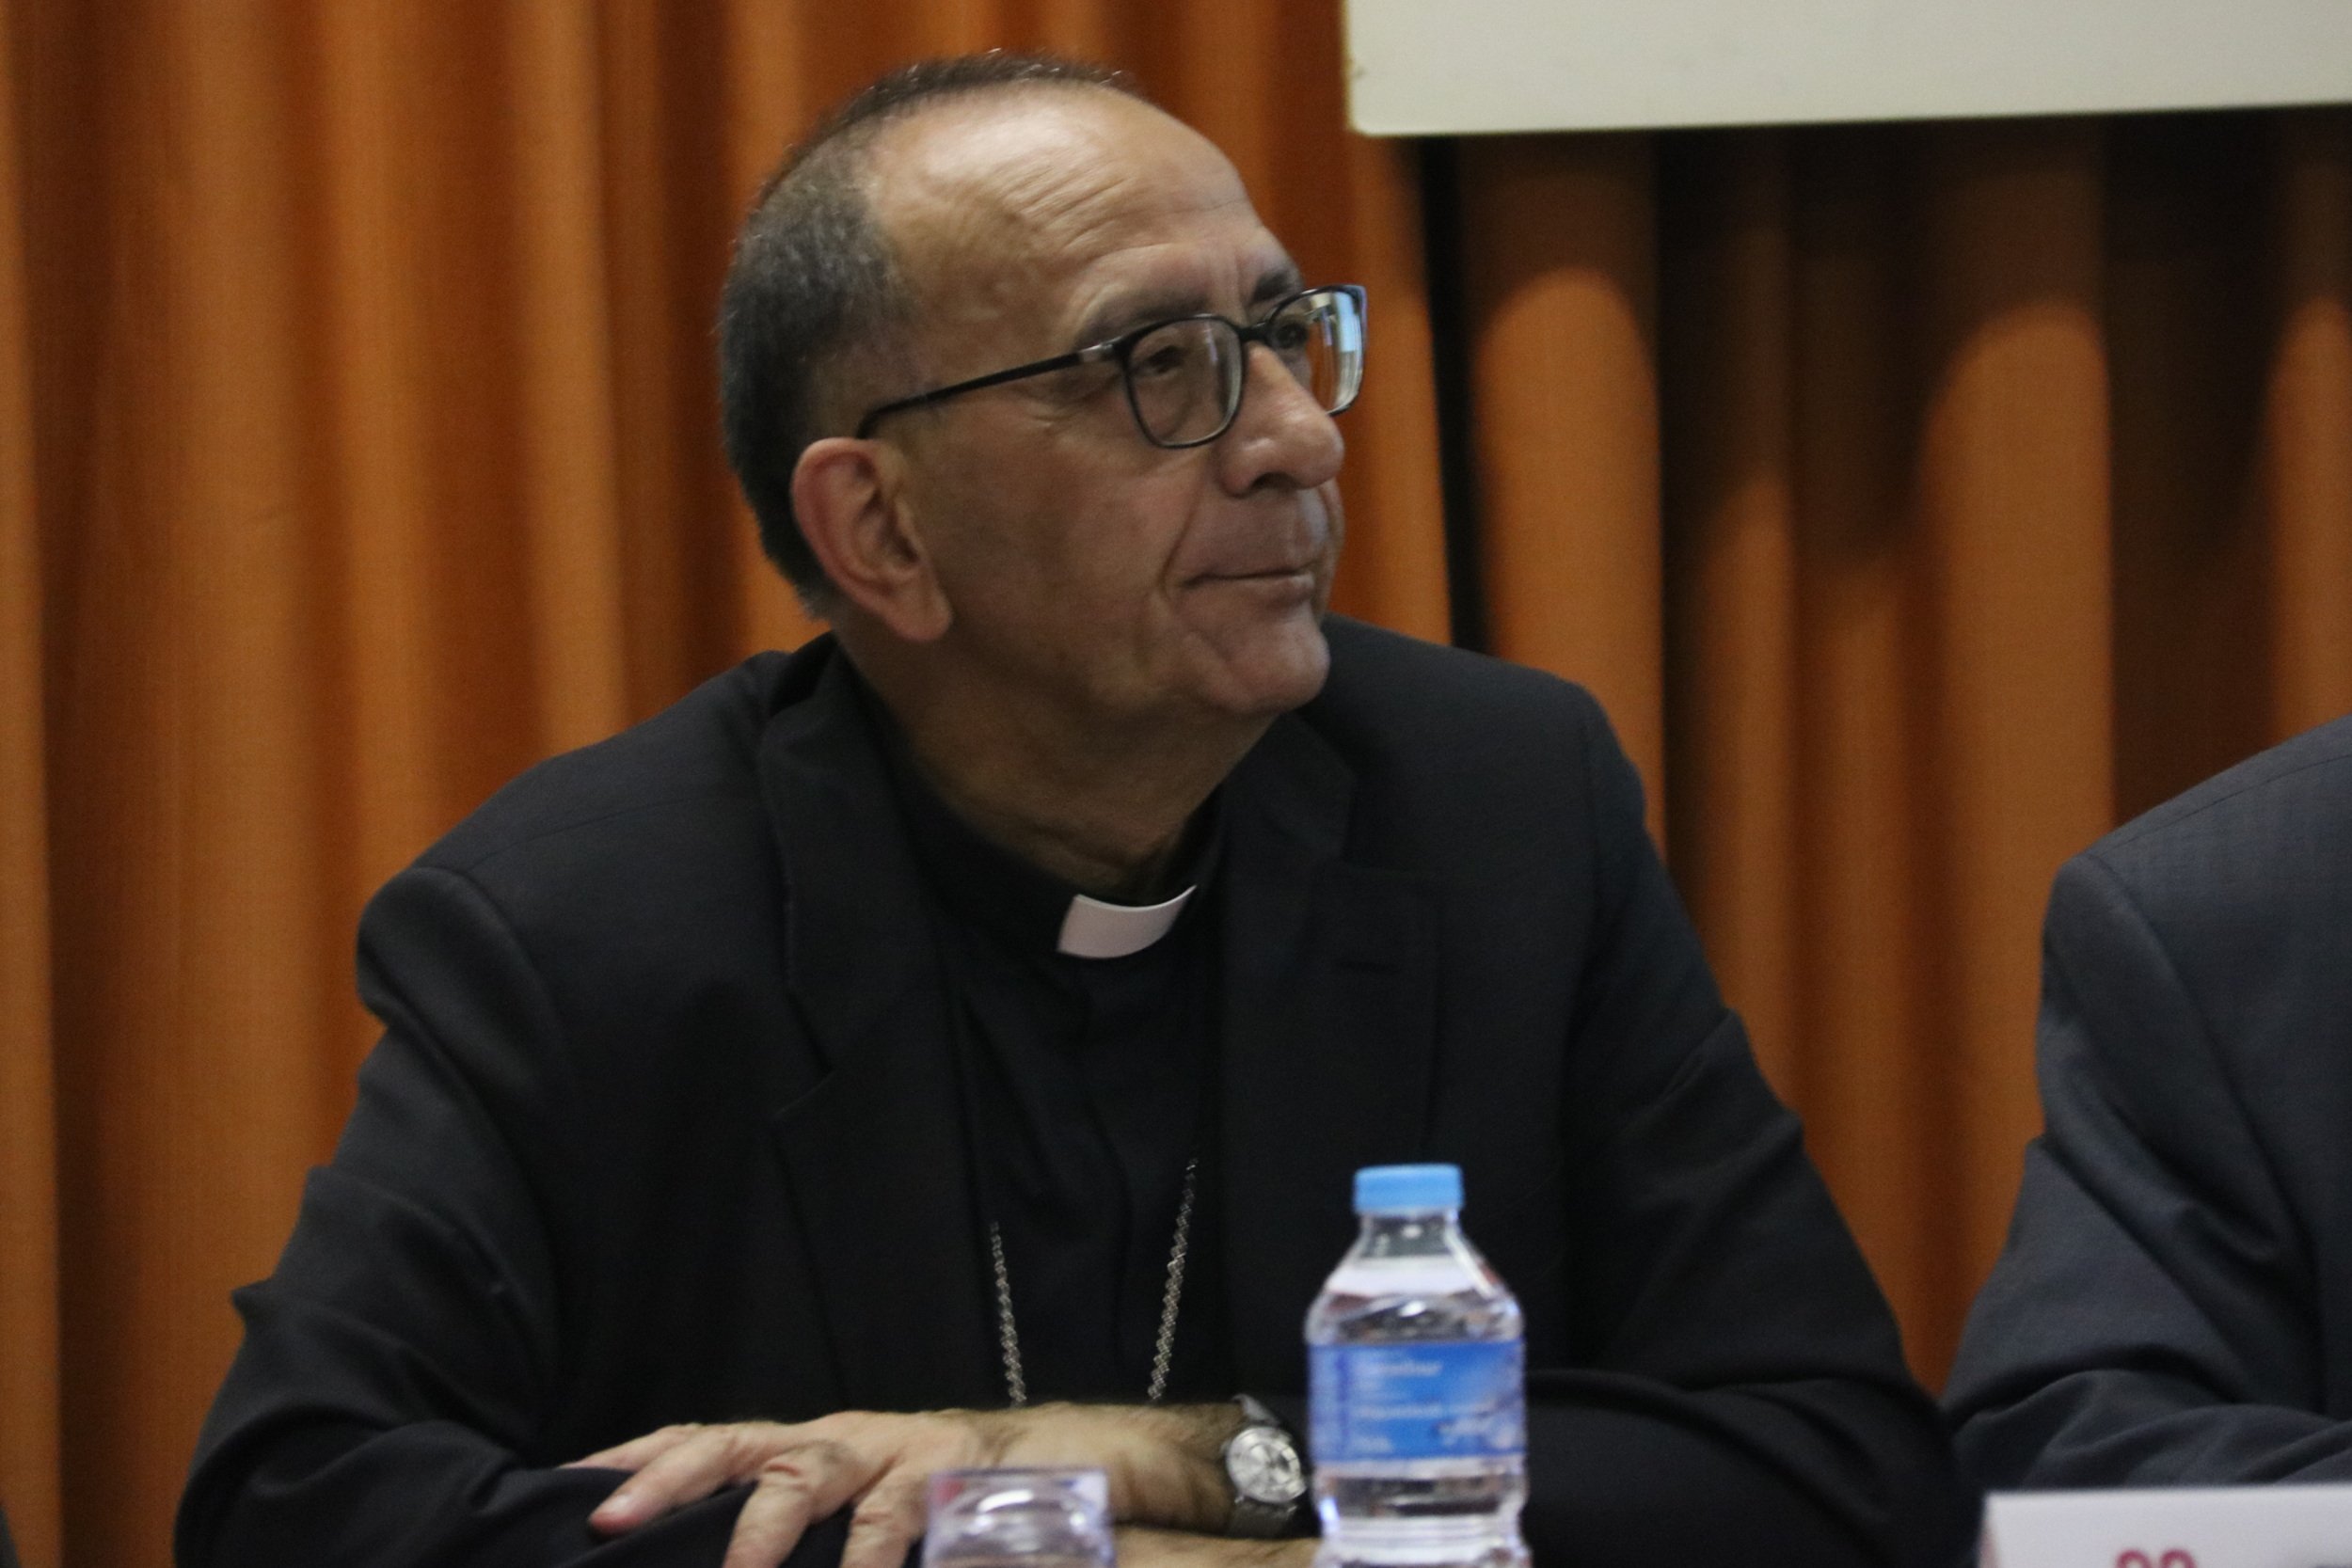 Els bisbes de Catalunya demanen perdó i es comprometen a investigar els abusos